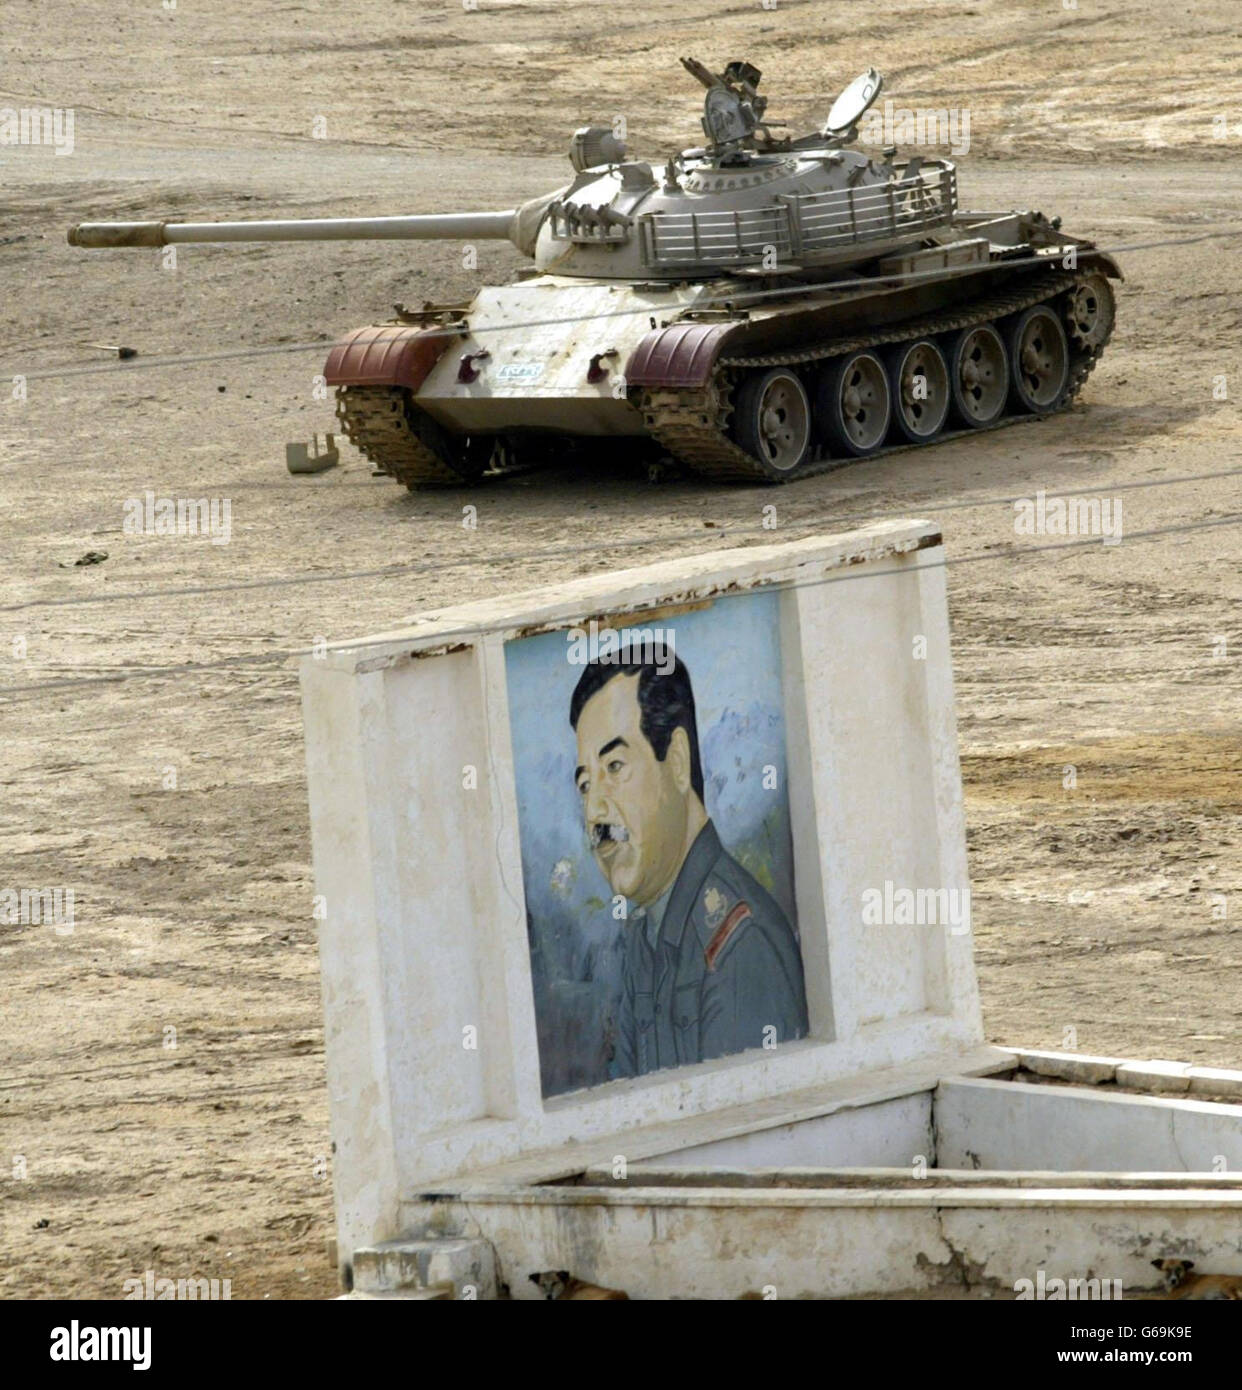 Serbatoio iracheno T55 in al Qurnah.. Un carro armato iracheno T55 distrutto, si trova di fronte ad un'immagine di Saddam Hussein a sud di al Qurnah. Foto Stock